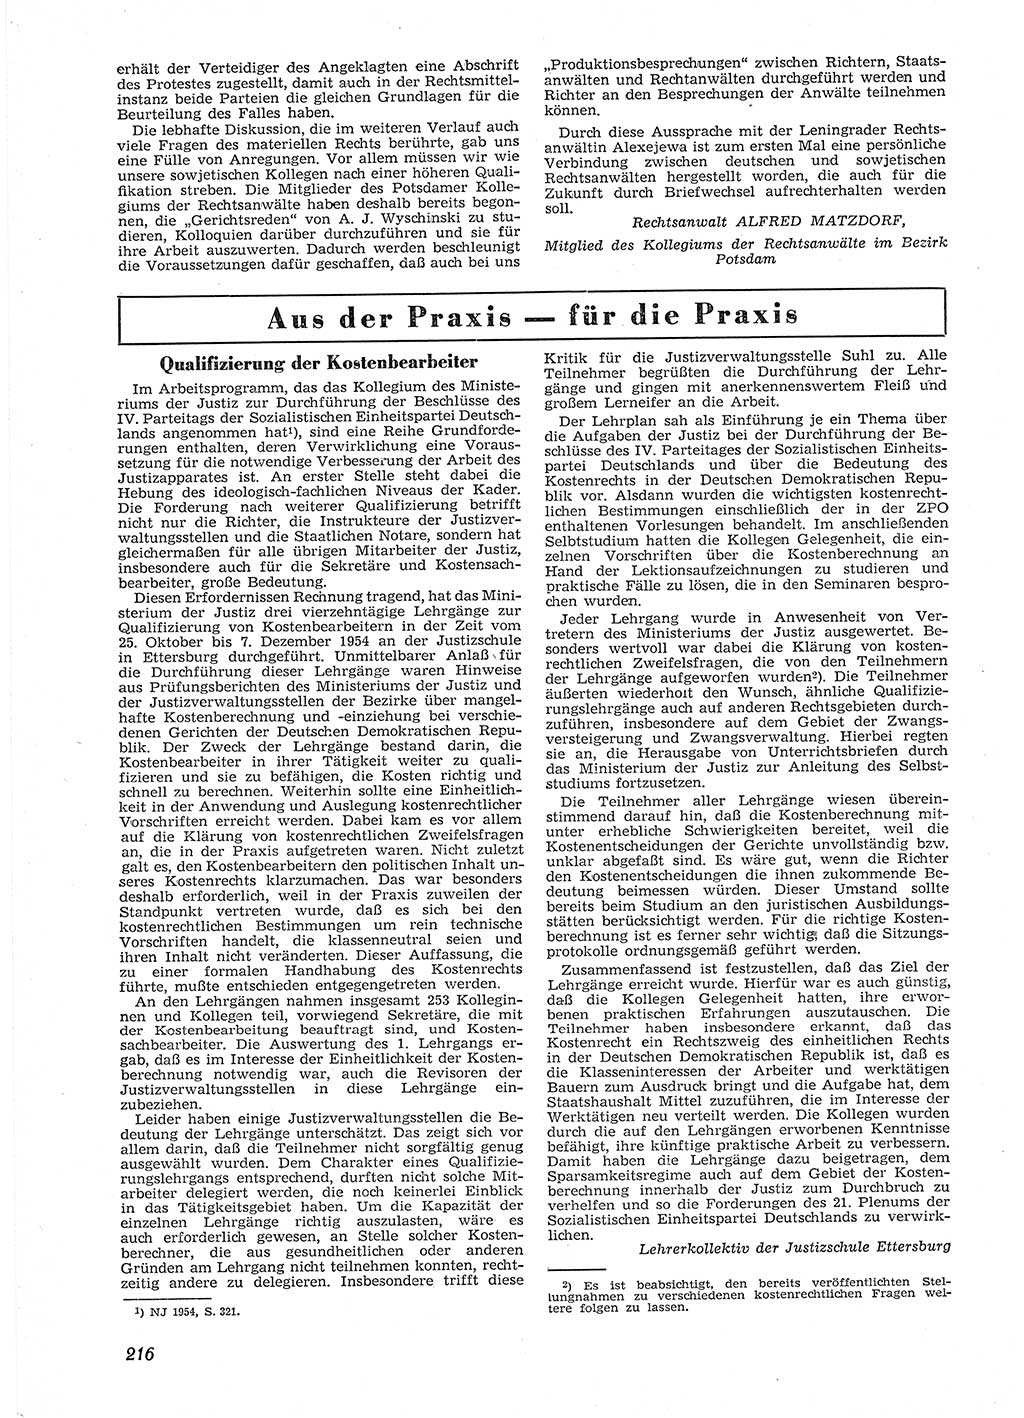 Neue Justiz (NJ), Zeitschrift für Recht und Rechtswissenschaft [Deutsche Demokratische Republik (DDR)], 9. Jahrgang 1955, Seite 216 (NJ DDR 1955, S. 216)